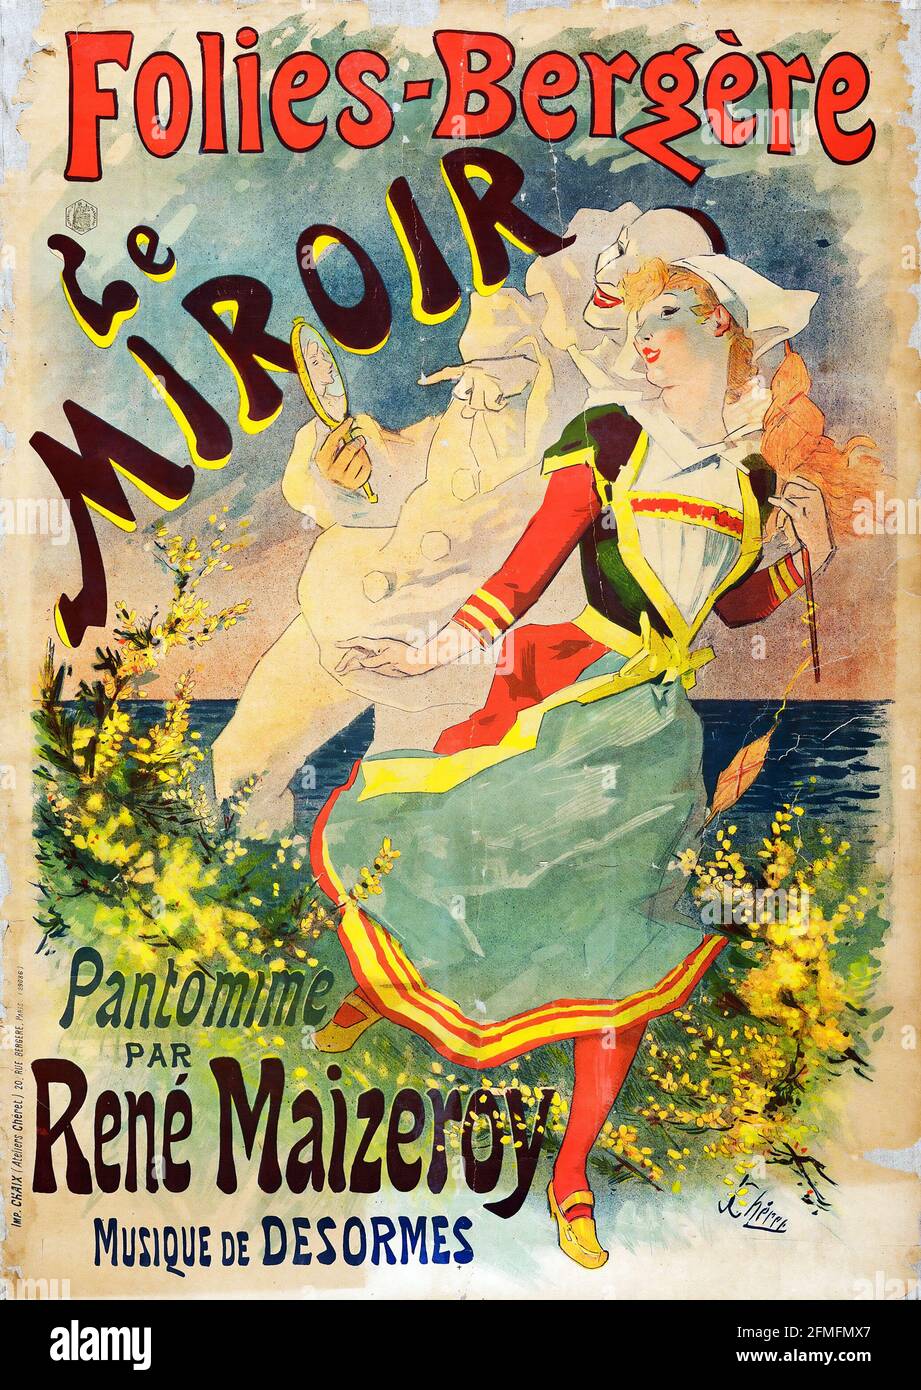 Folies-Bergère Le Miroir. Pantomime par René Maizeroy. Music by Desormes. Belle époque poster. Pantomime. Artwork by Jules Chéret. 1899 Stock Photo